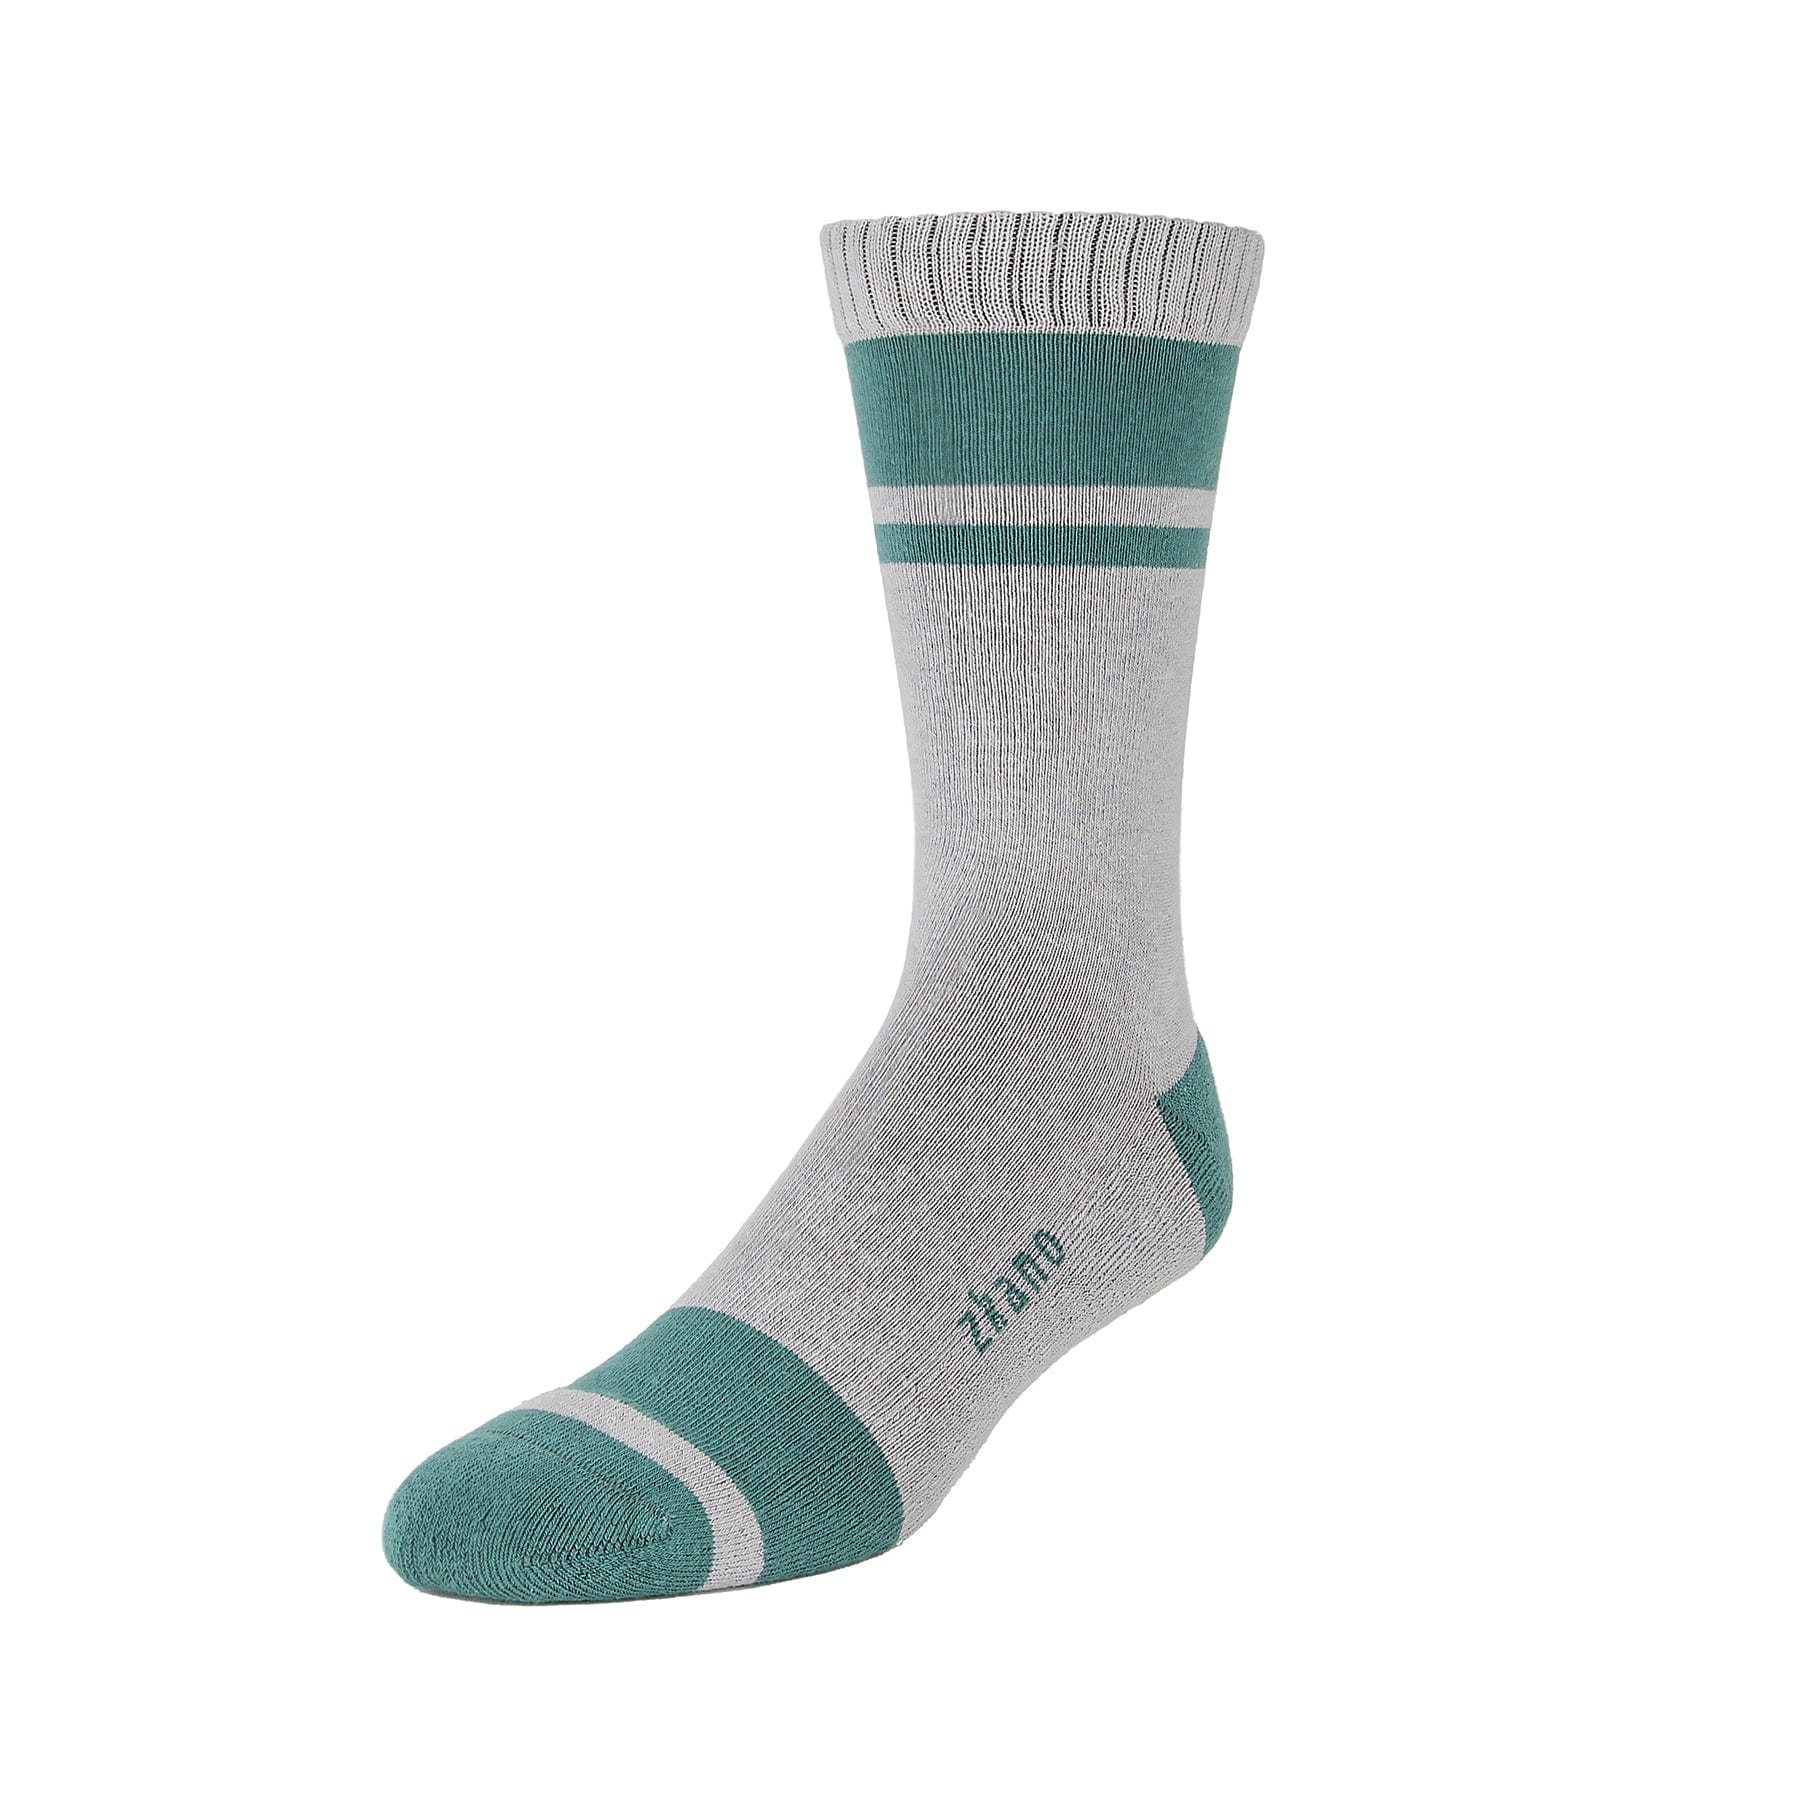 Little River - Organic Cotton Cushion Crew Socks - Fir – zkano socks